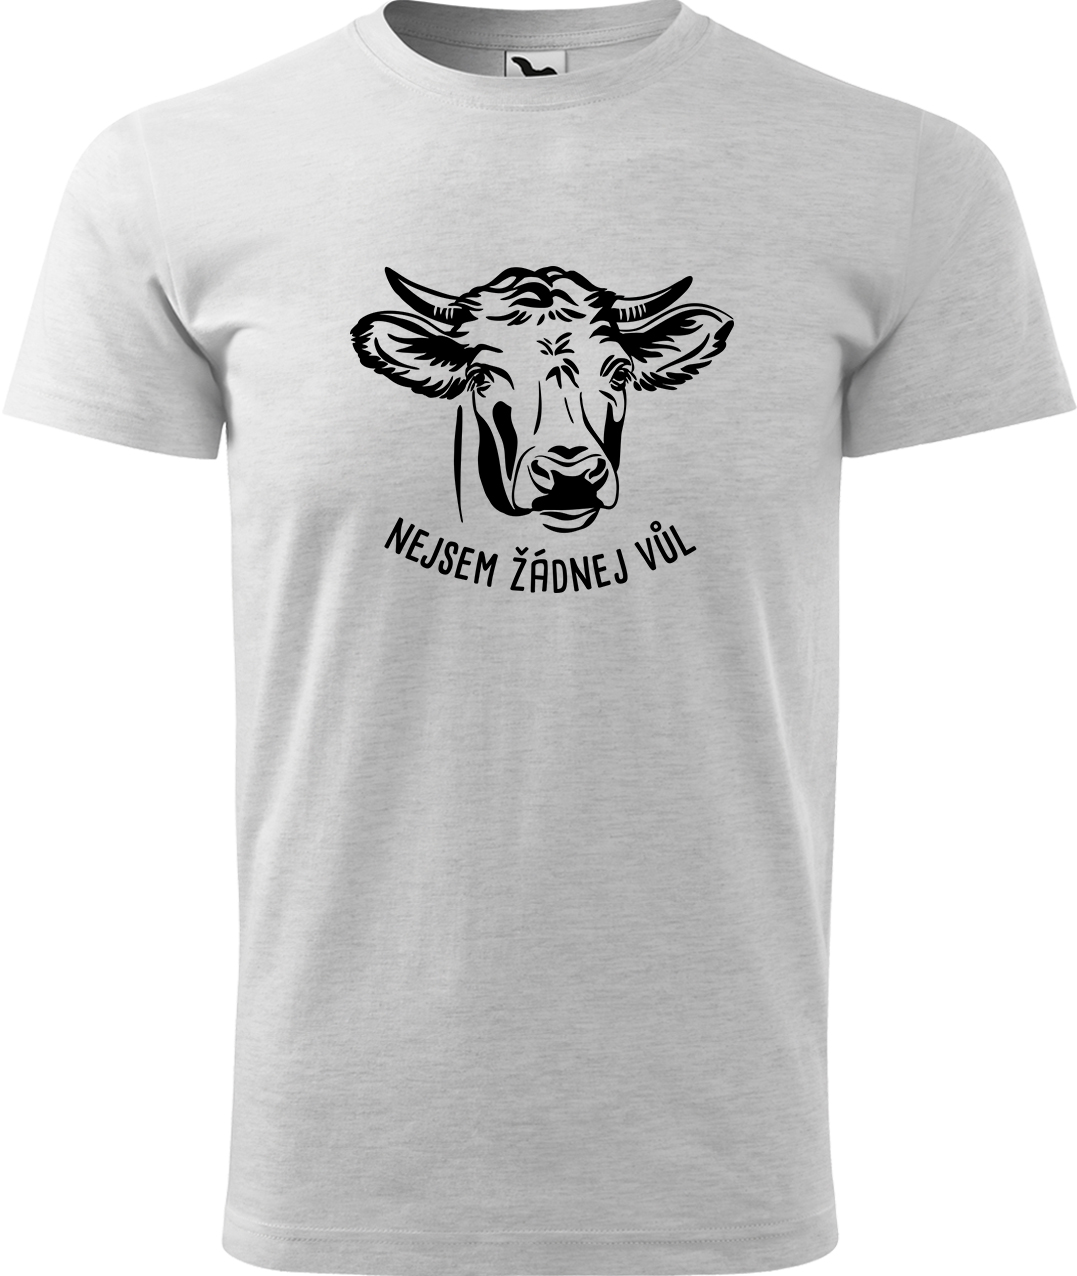 Pánské tričko s krávou - Nejsem žádnej vůl Velikost: S, Barva: Světle šedý melír (03), Střih: pánský